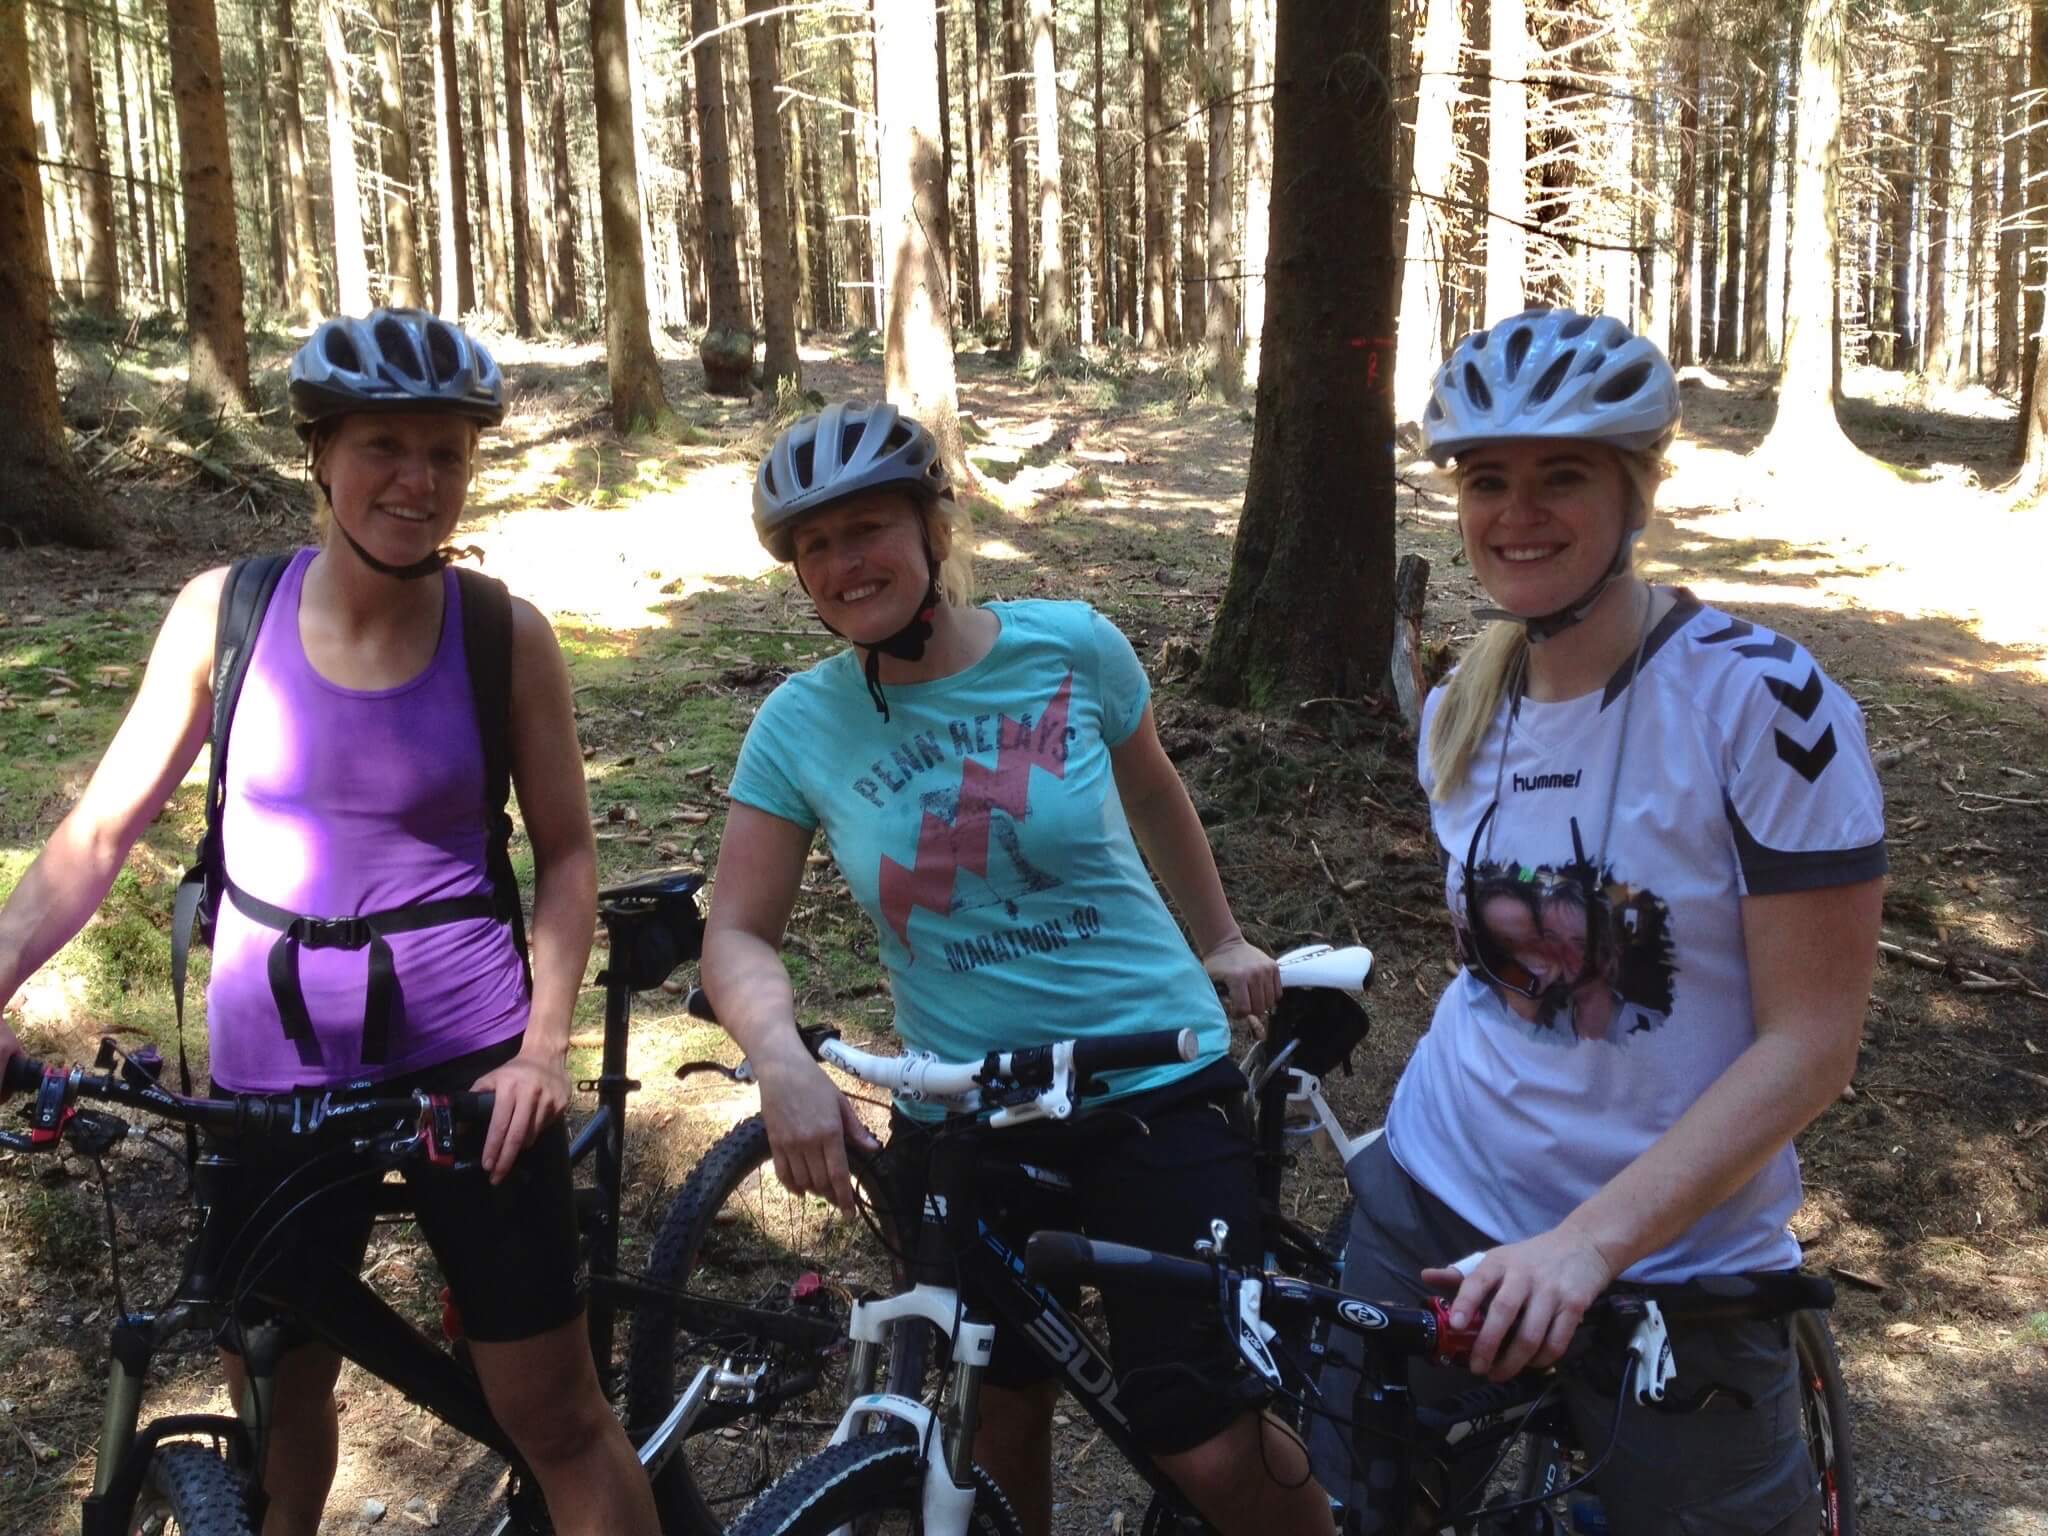 Mountainbike Frauen Kurs in Siegen - Rock my Trail Fahrtechnik Bikeschule